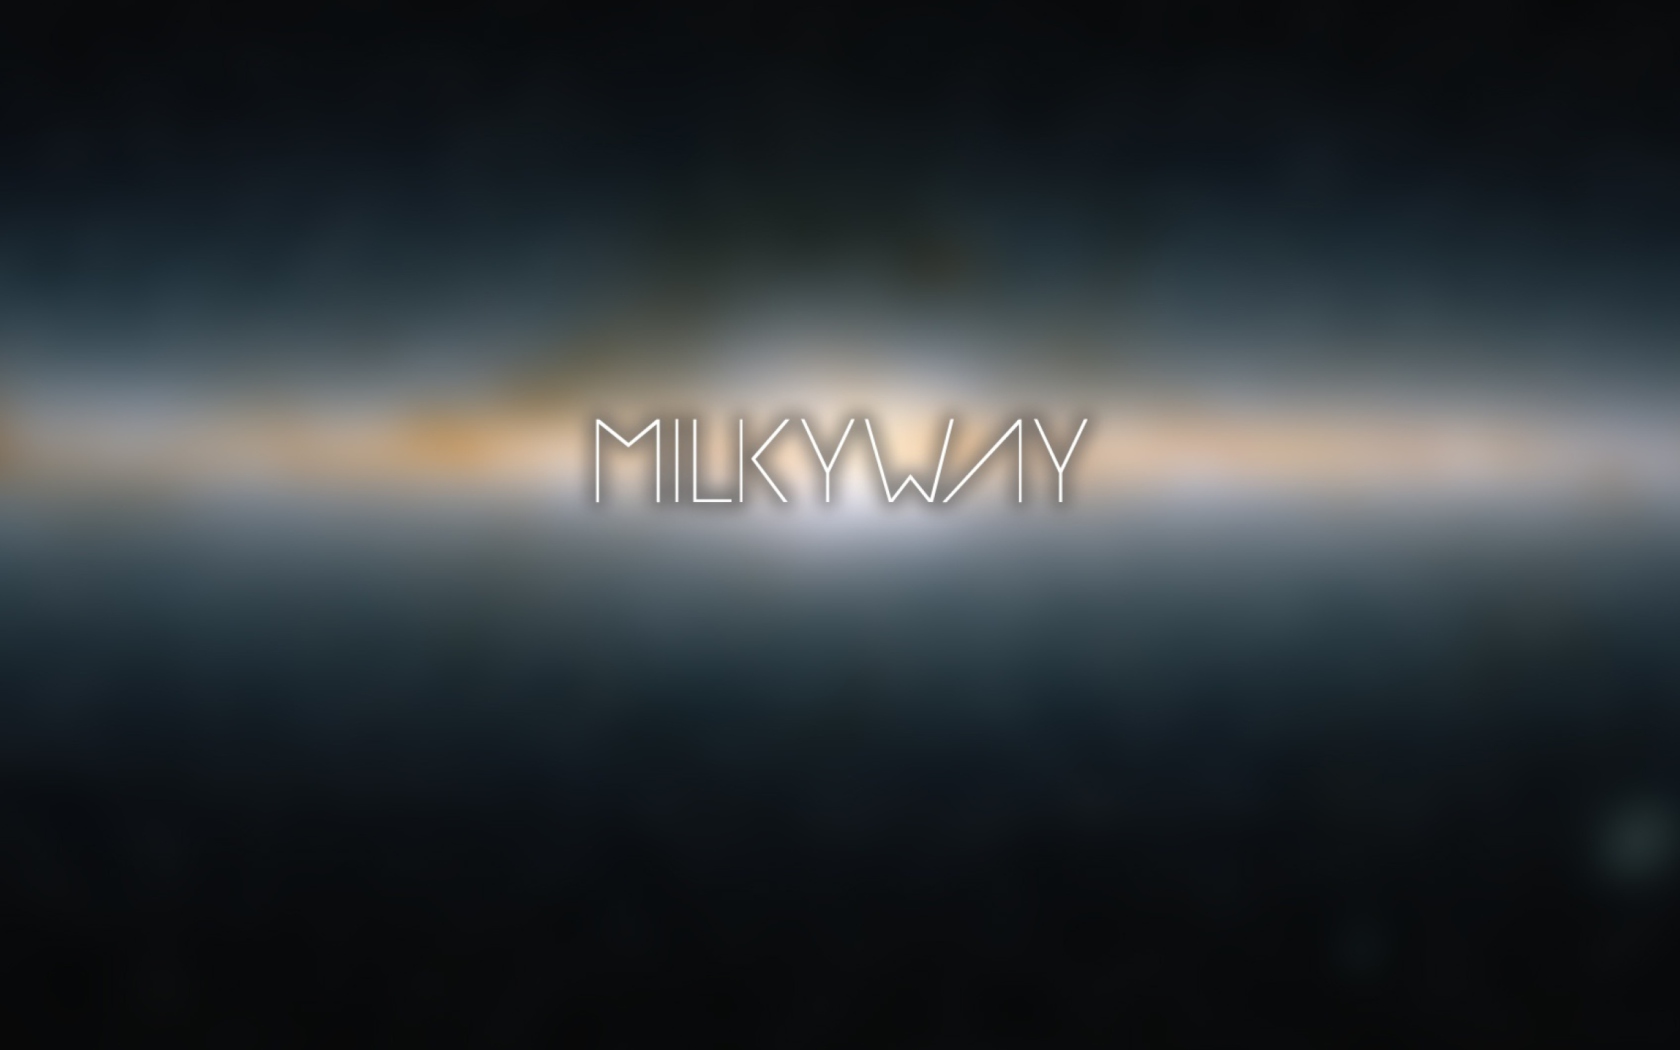 Milky Way wallpaper 1680x1050